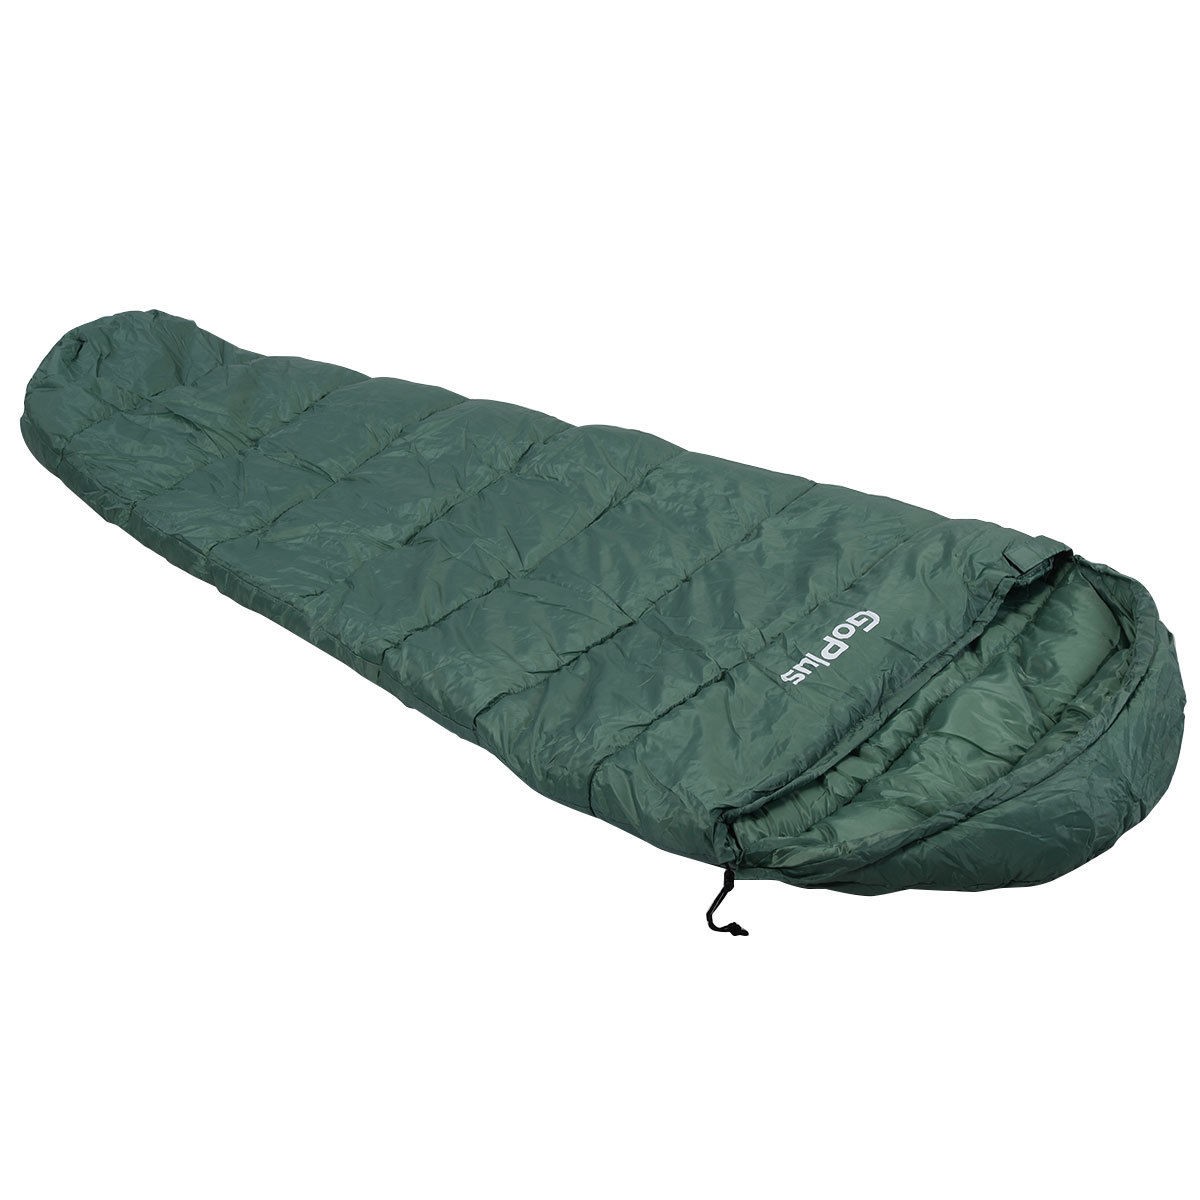 Outdoor Waterproof Camping Sleeping Bag W / Carrying Bag